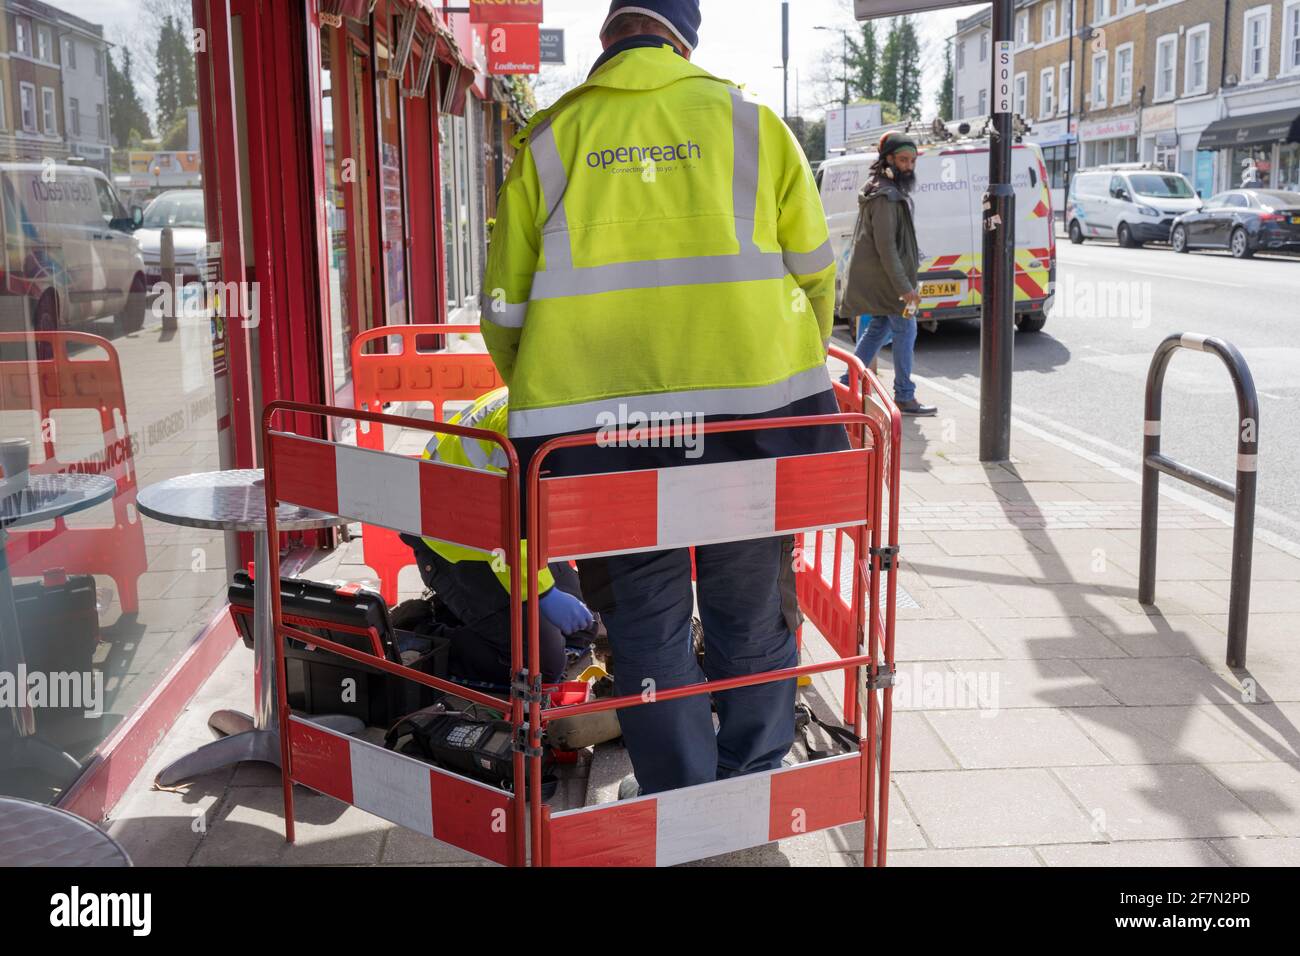 L'ingénieur Openreach se trouve à côté de ses collègues au travail, en connectant de nouvelles lignes à l'intérieur de la boîte de câble sous le trottoir, barrière de sécurité routière, Londres Banque D'Images